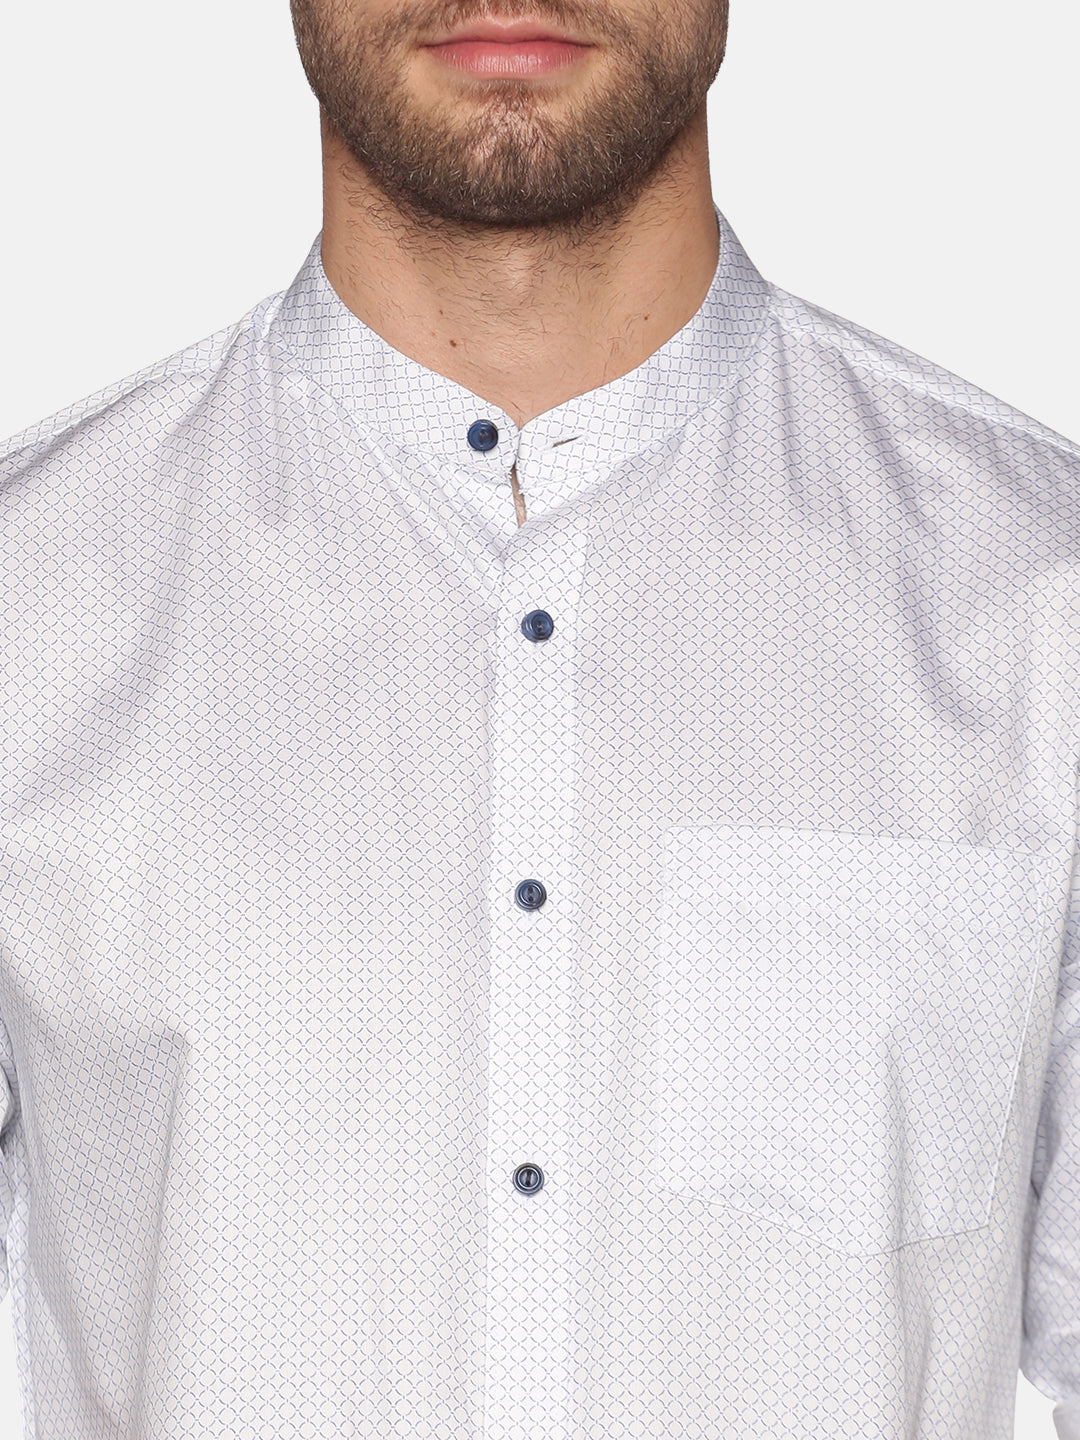 Don Vino Men's White Solid Full Sleeve Casual Shirt